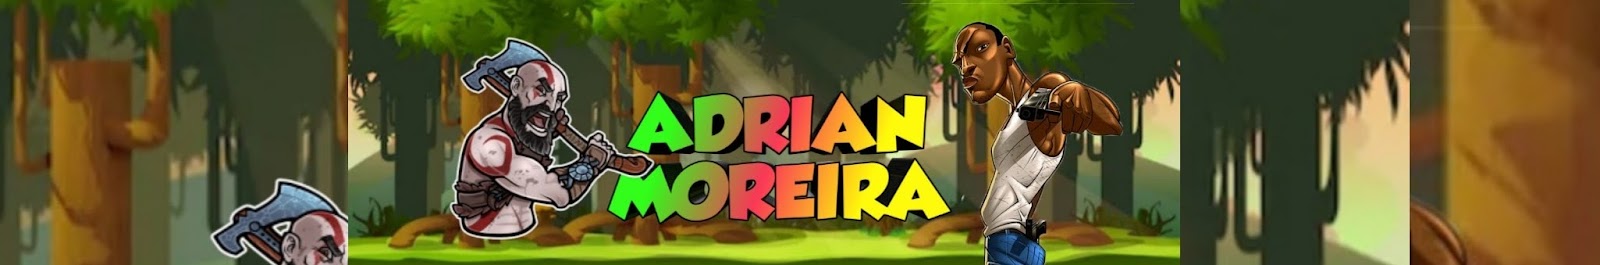 ADRIAN MOREIRA